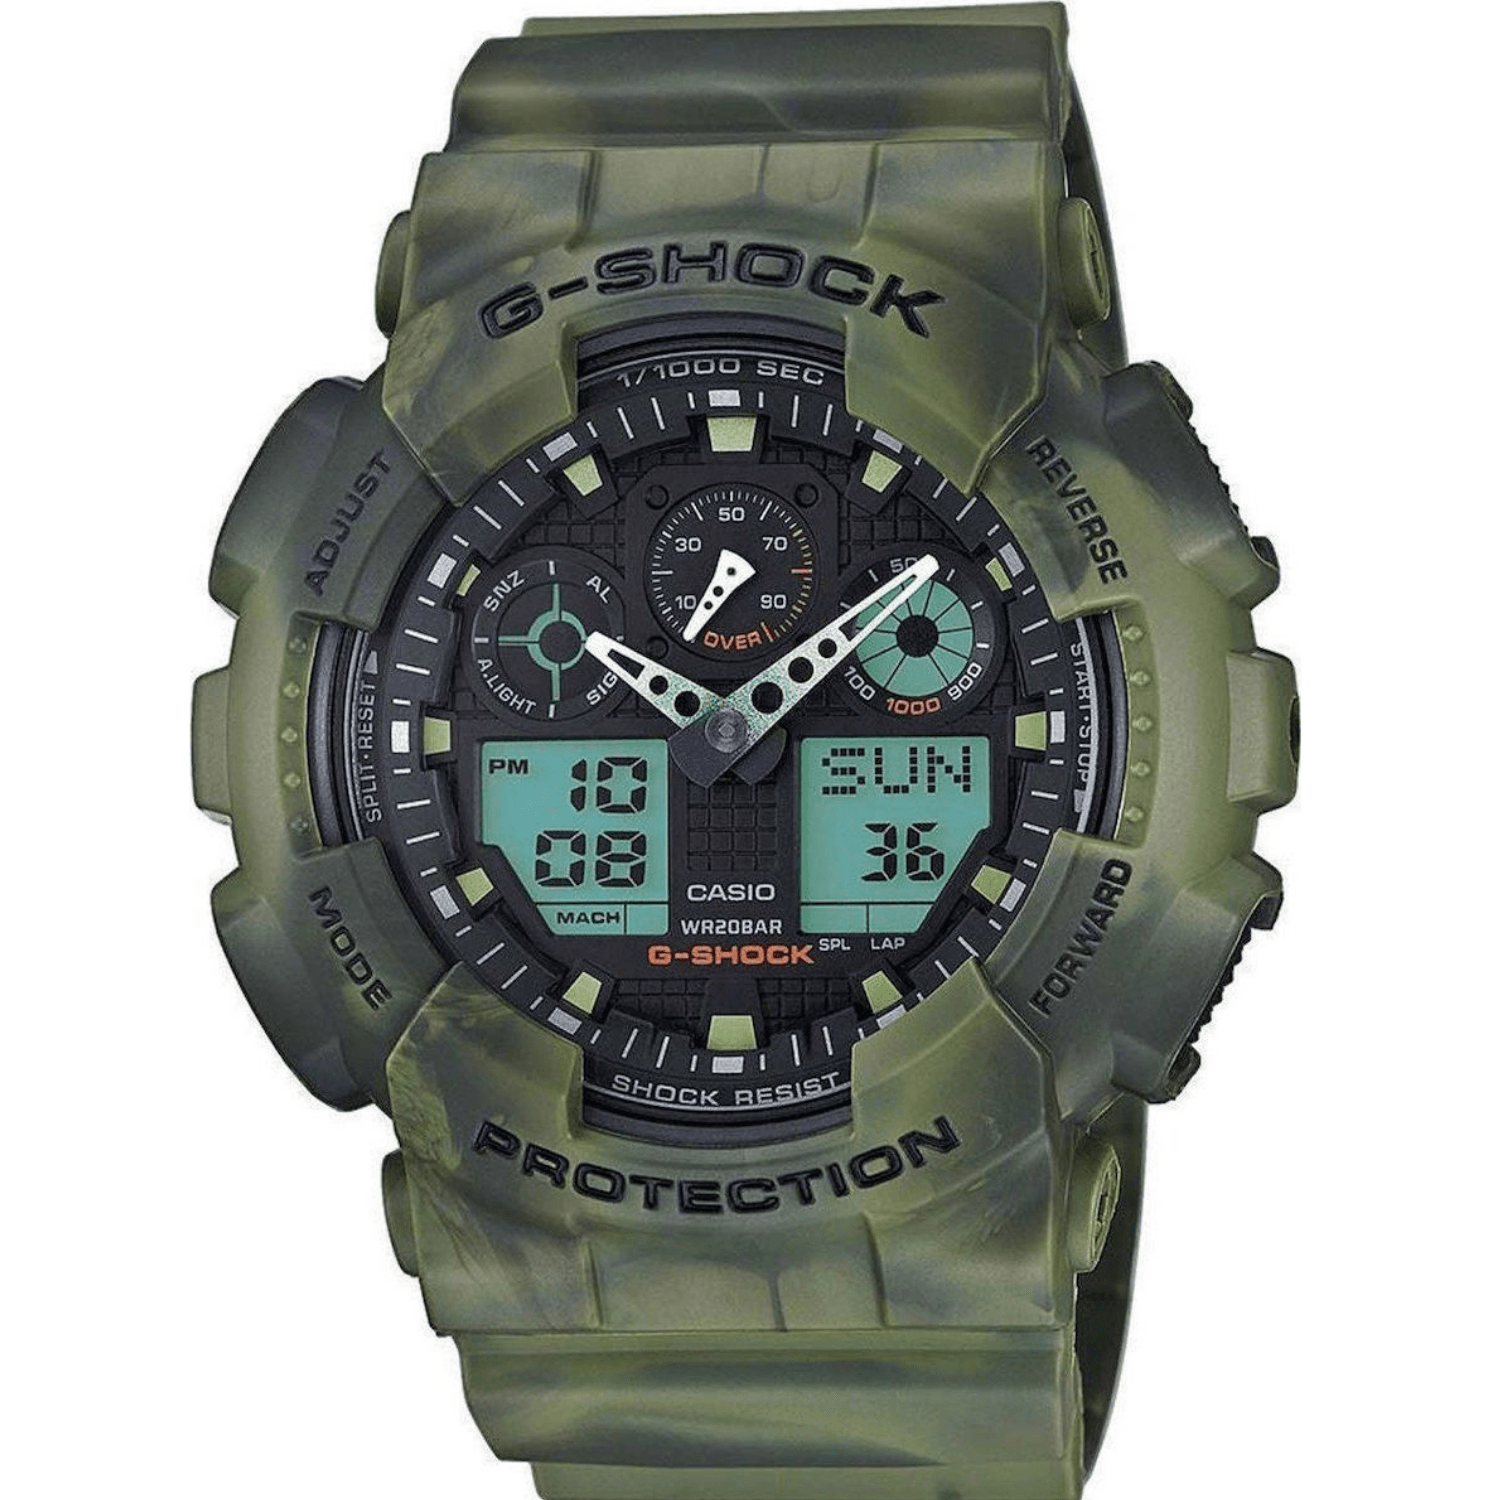 Καταδυτικό ρολόι χρονογράφος Casio G-Shock GA-100B-7AER με πράσινο στρατιωτικό λουράκι, μαύρο καντράν και στεγανότητα 20ATM-200Μ.